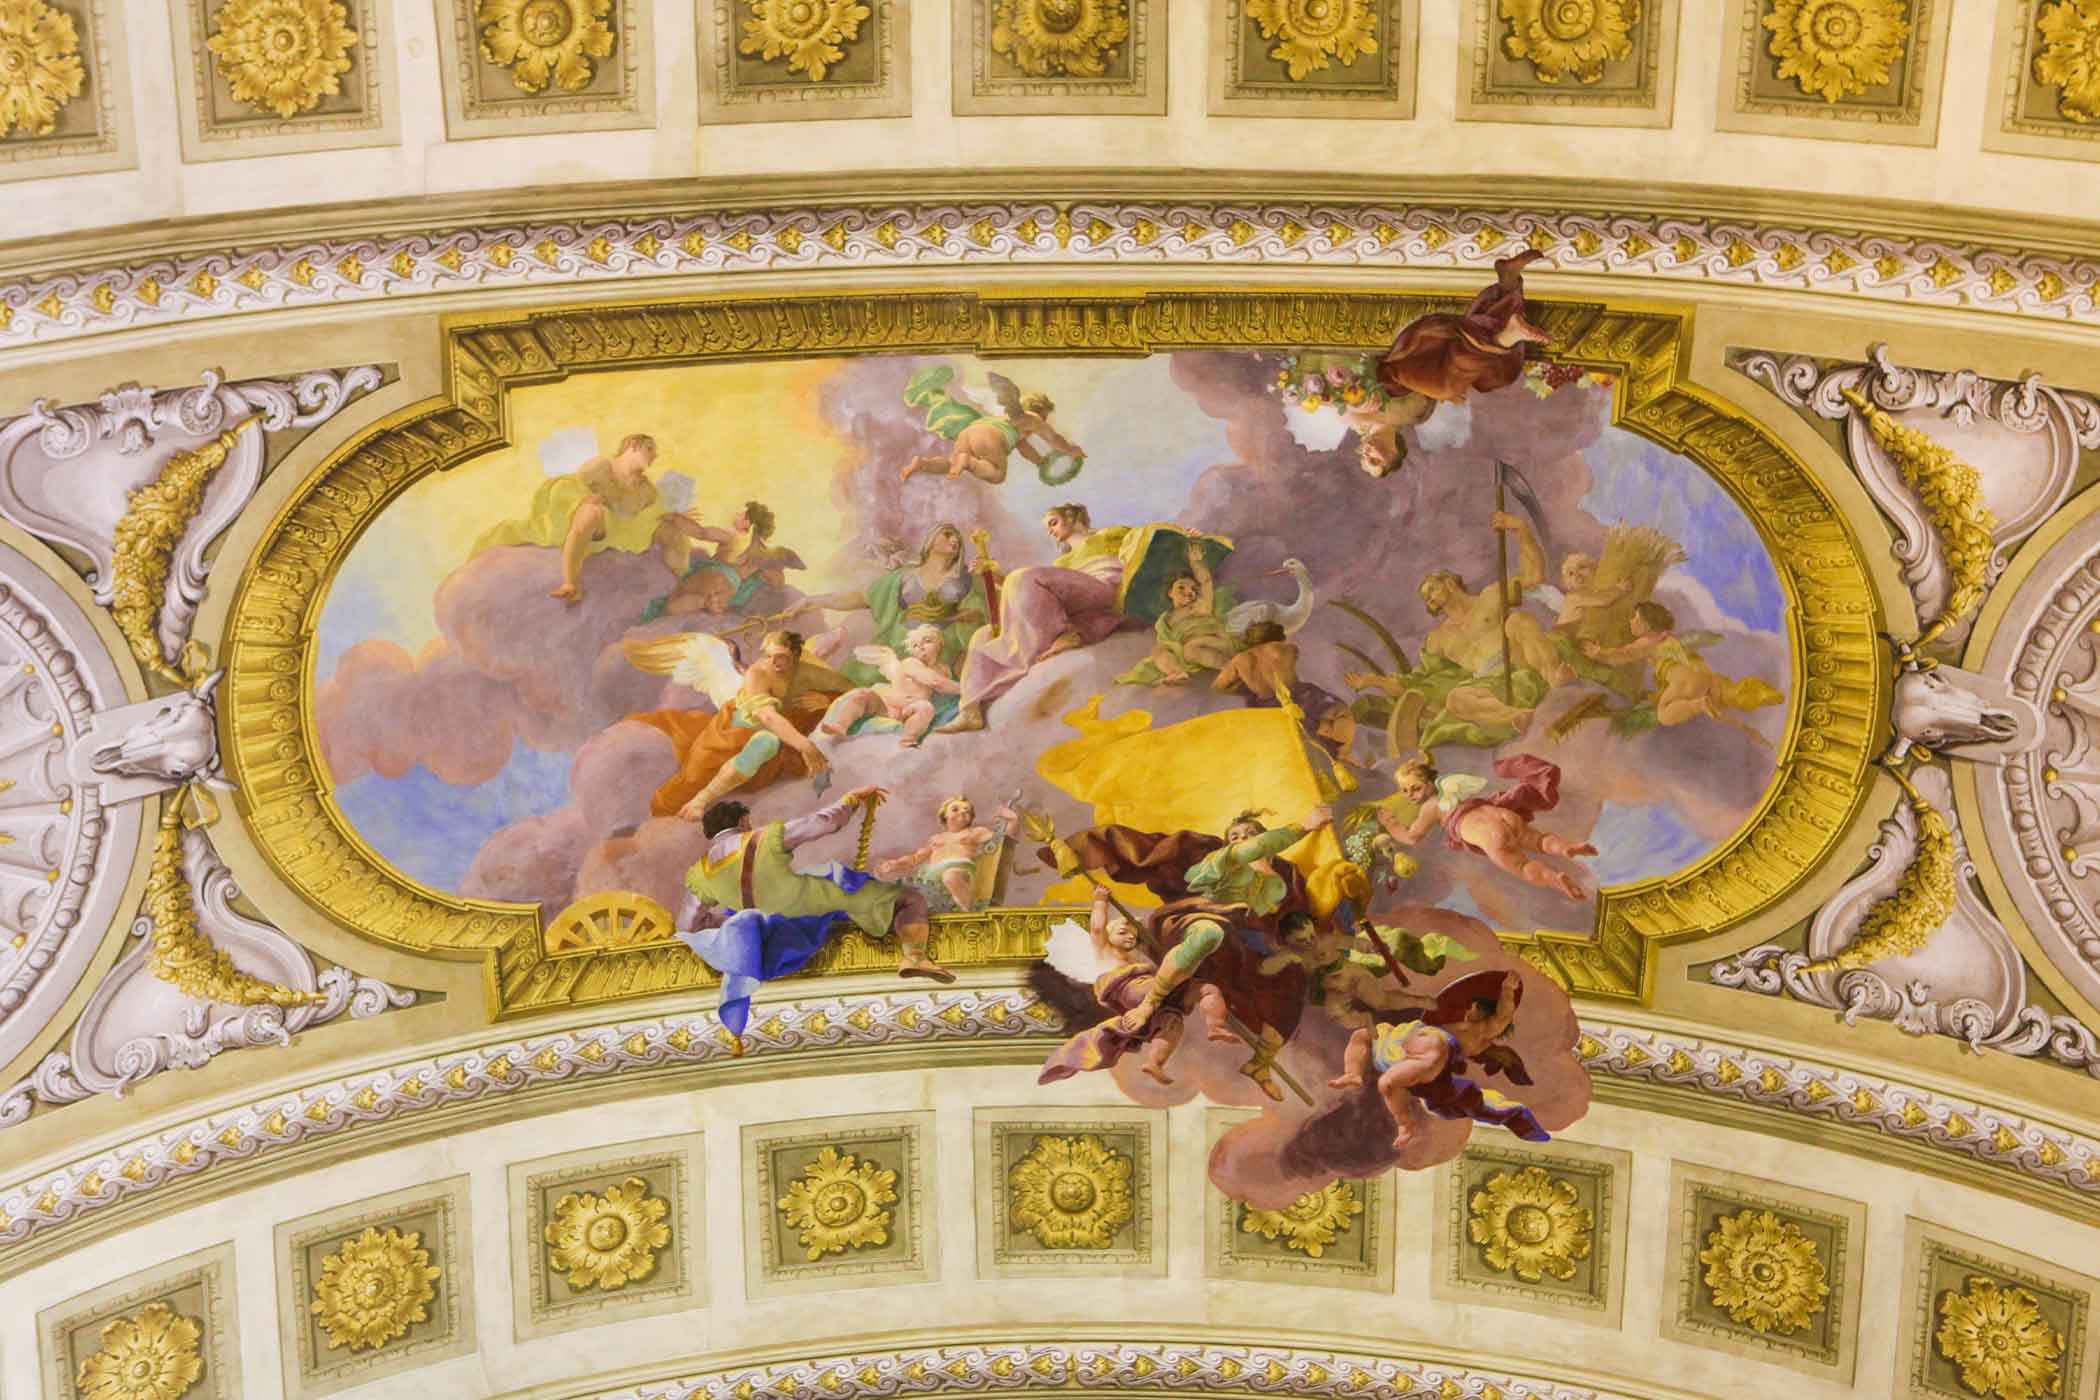 Một bức bích họa trên trần bên trong Đại sảnh Quốc gia ở Cung điện Hofburg, Vienna. (Ảnh: jorisvo/Shutterstock)